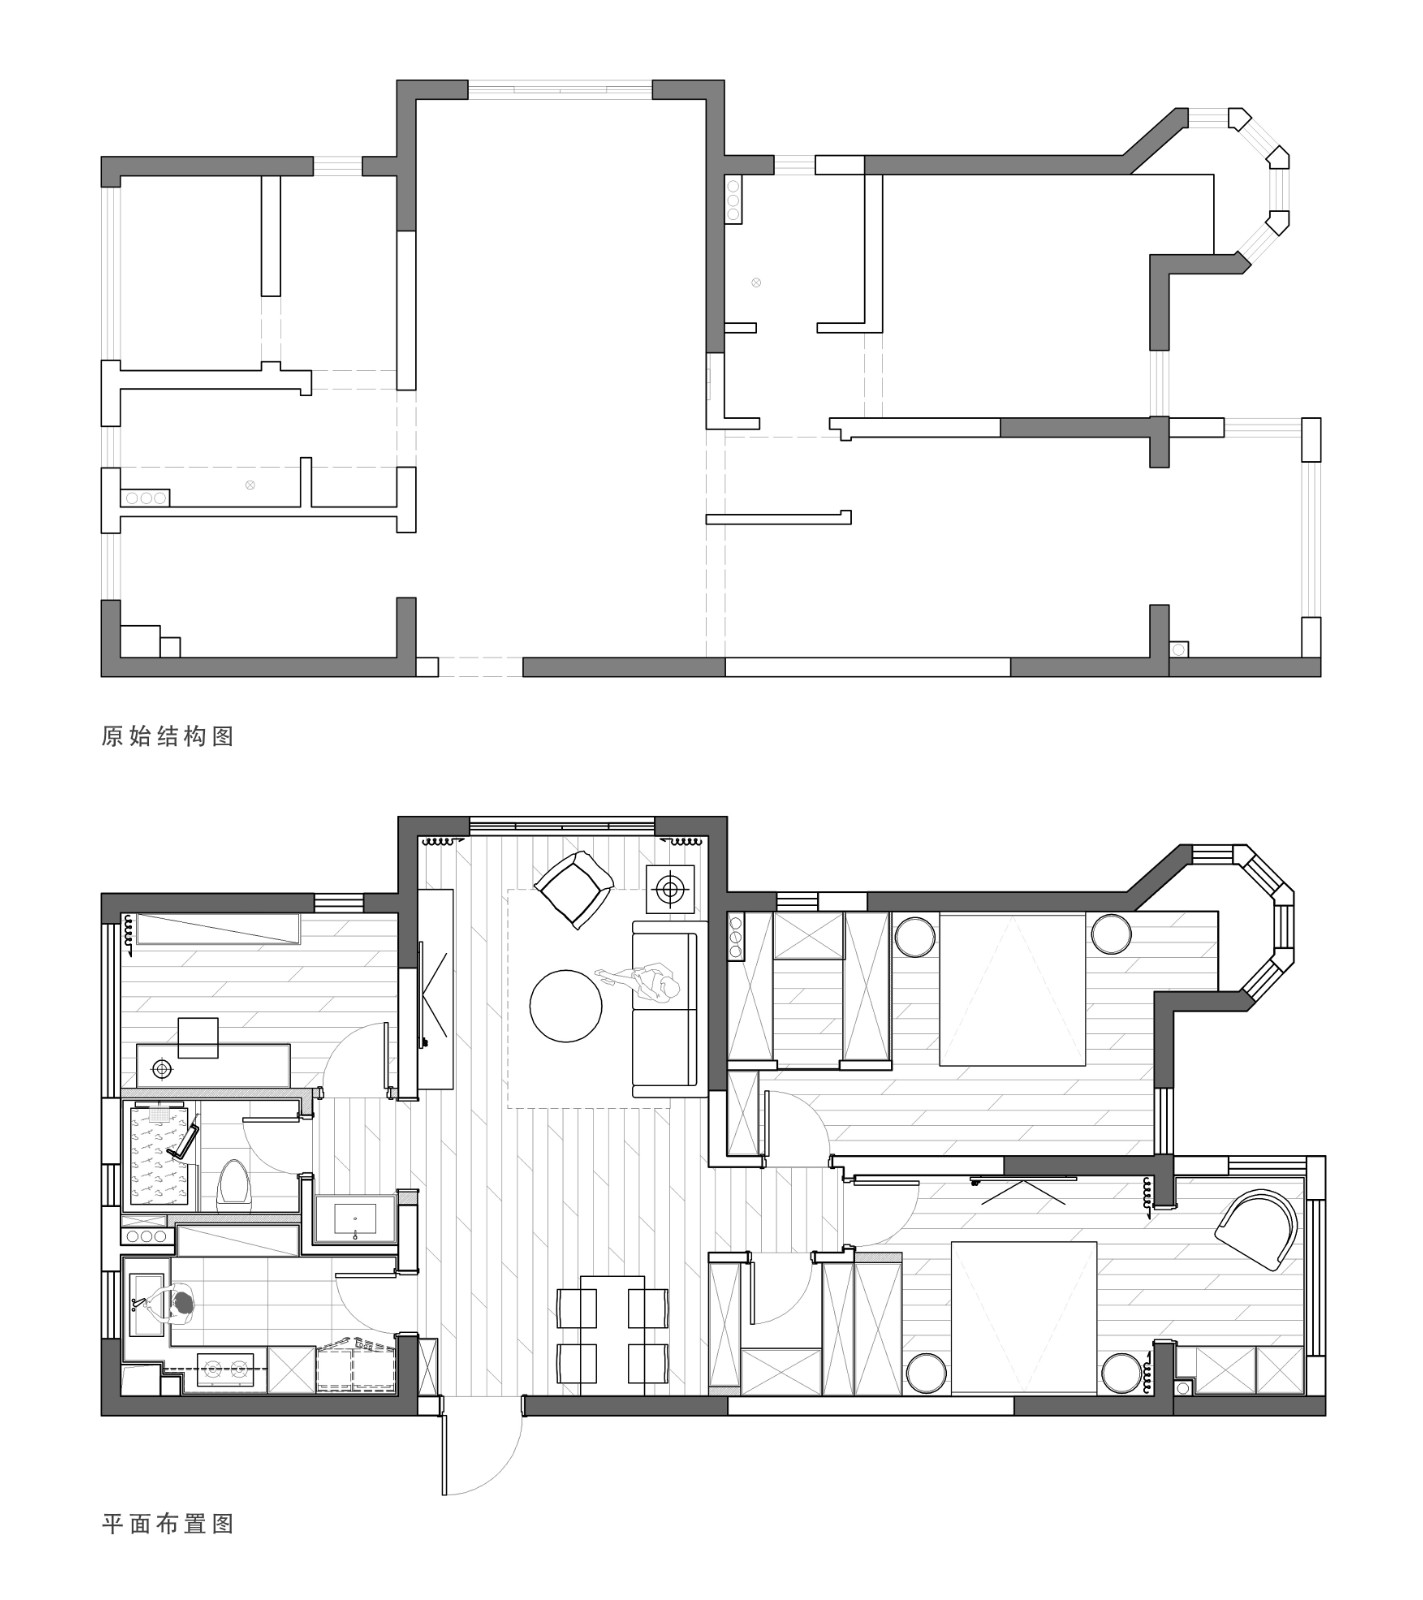 130现代三房装修效果图,感受去繁化简之美装修案例效果图-美广网